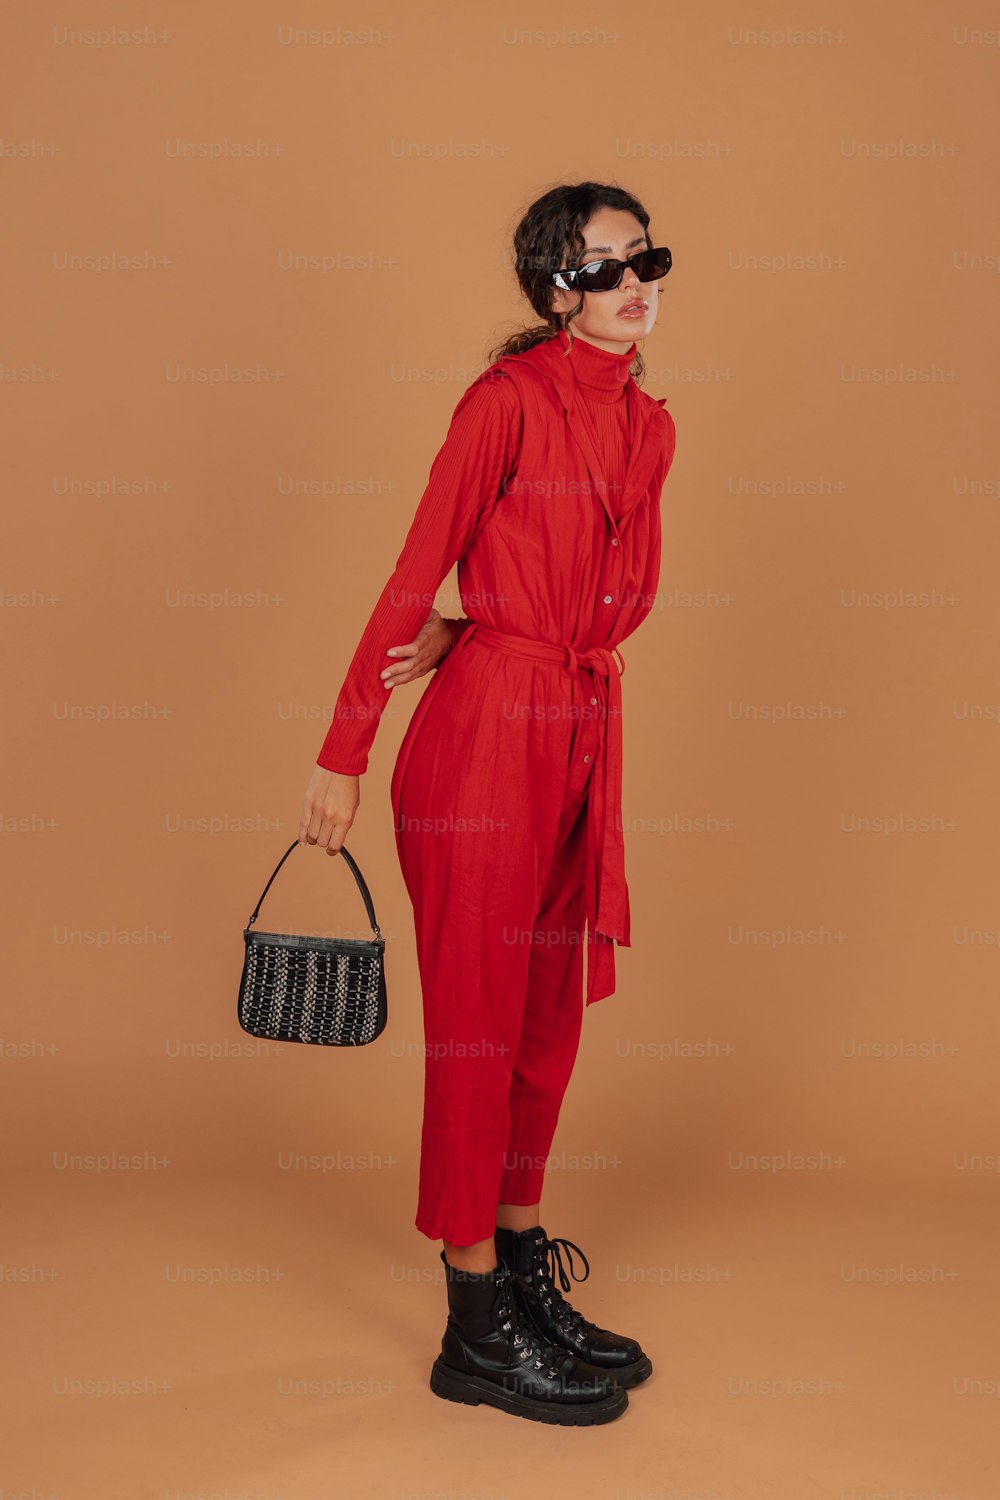 黒い財布を持つ赤いジャンプスーツを着た女性